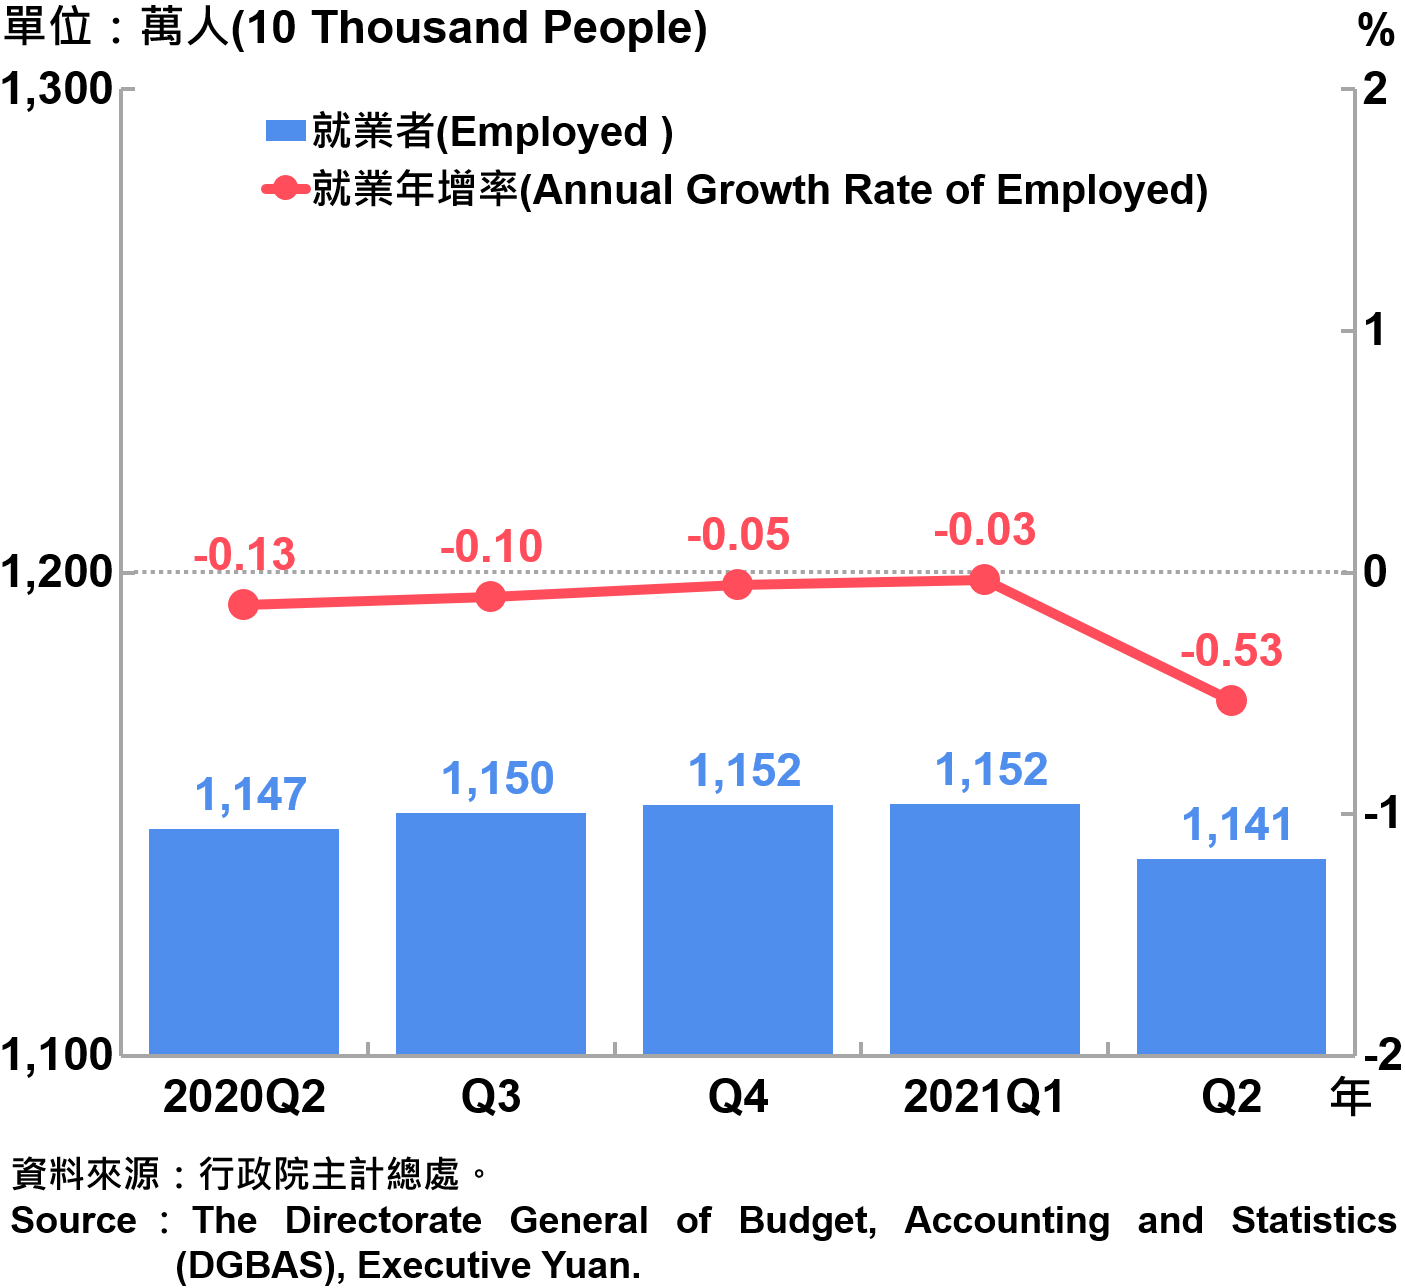 就業人數及就業成長率 Employed and Annual Growth Rate of Employed